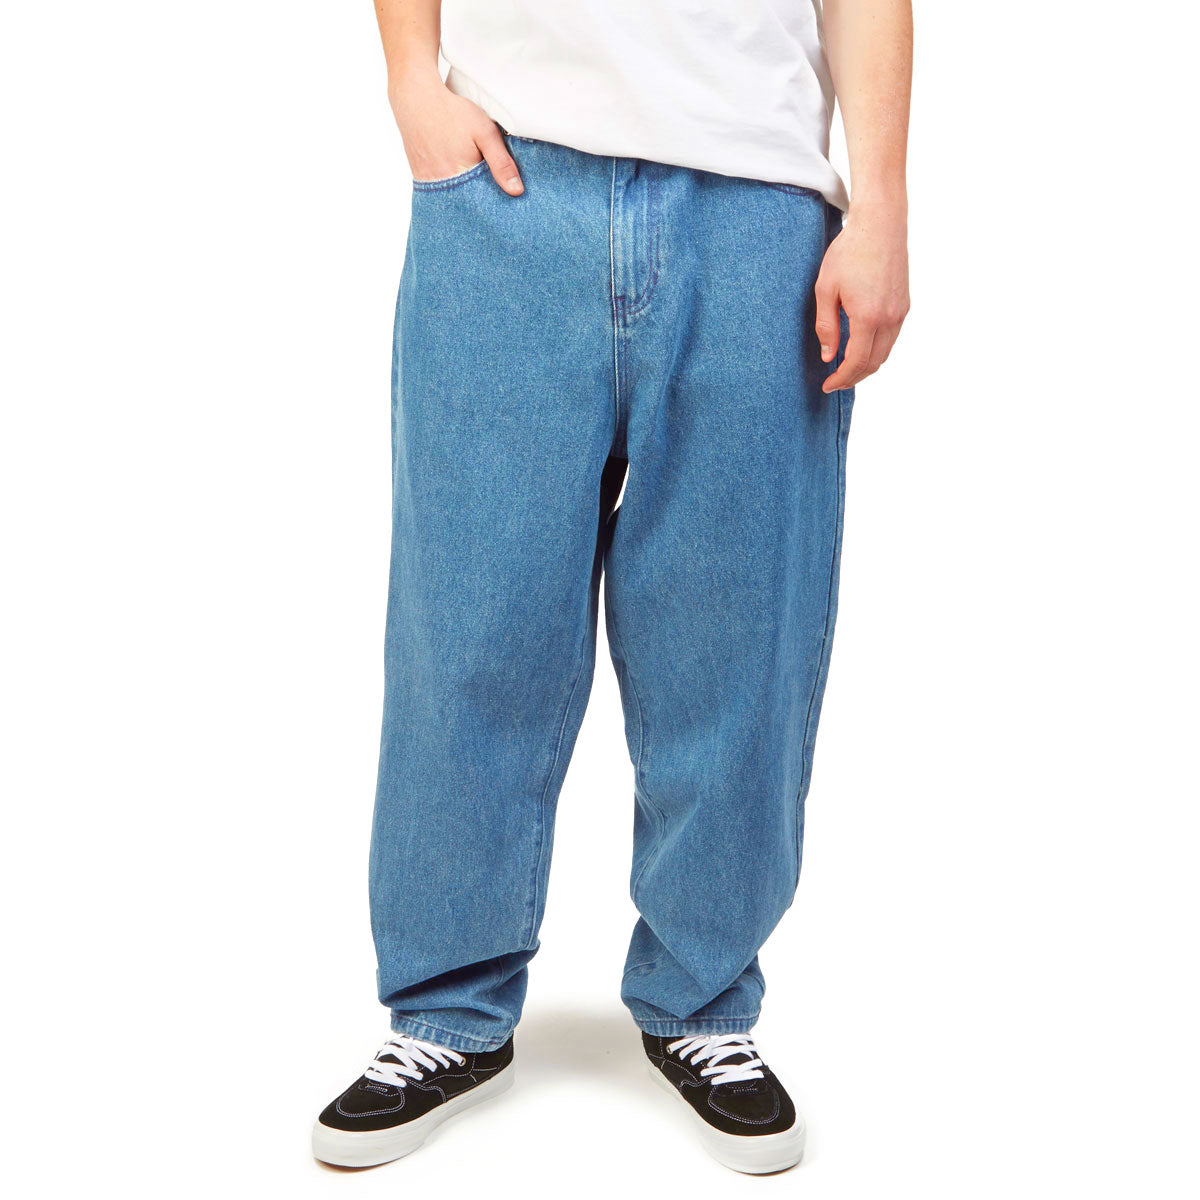 CCS Baggy Taper Denim Jeans - Medium Wash